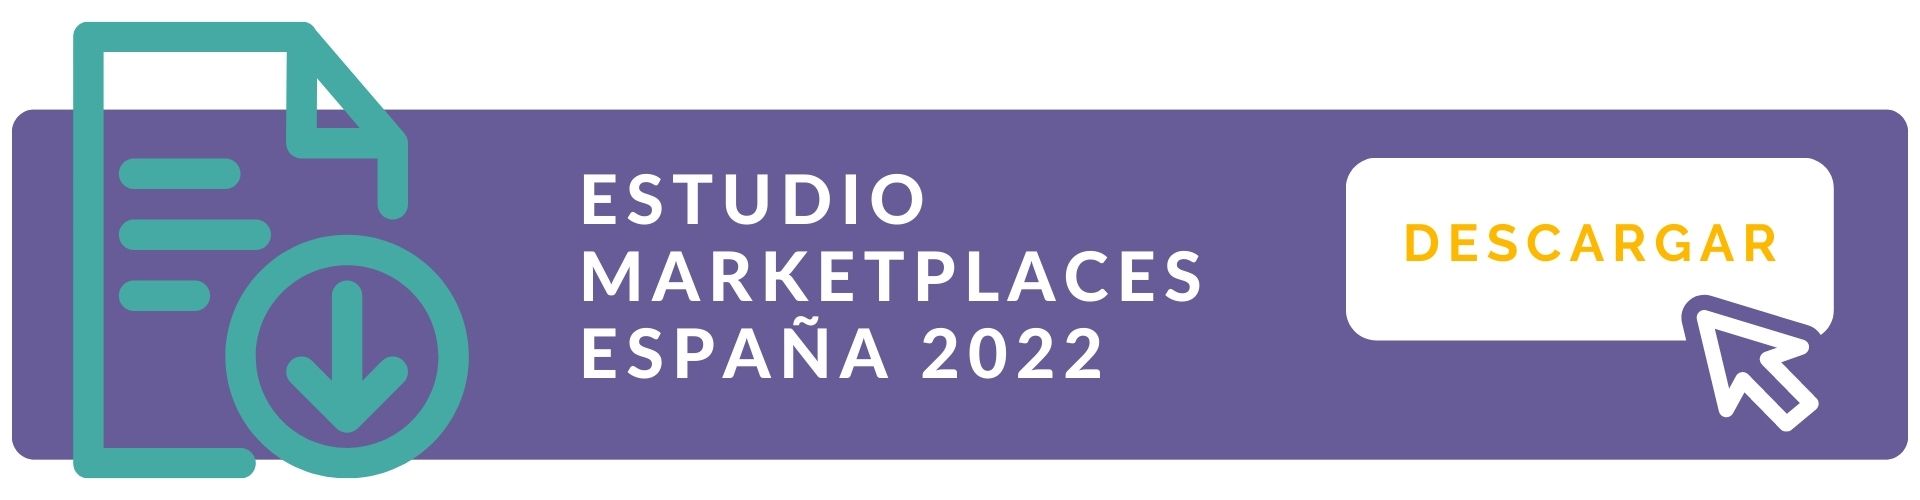 Descarga Estudio Marketplaces 2022